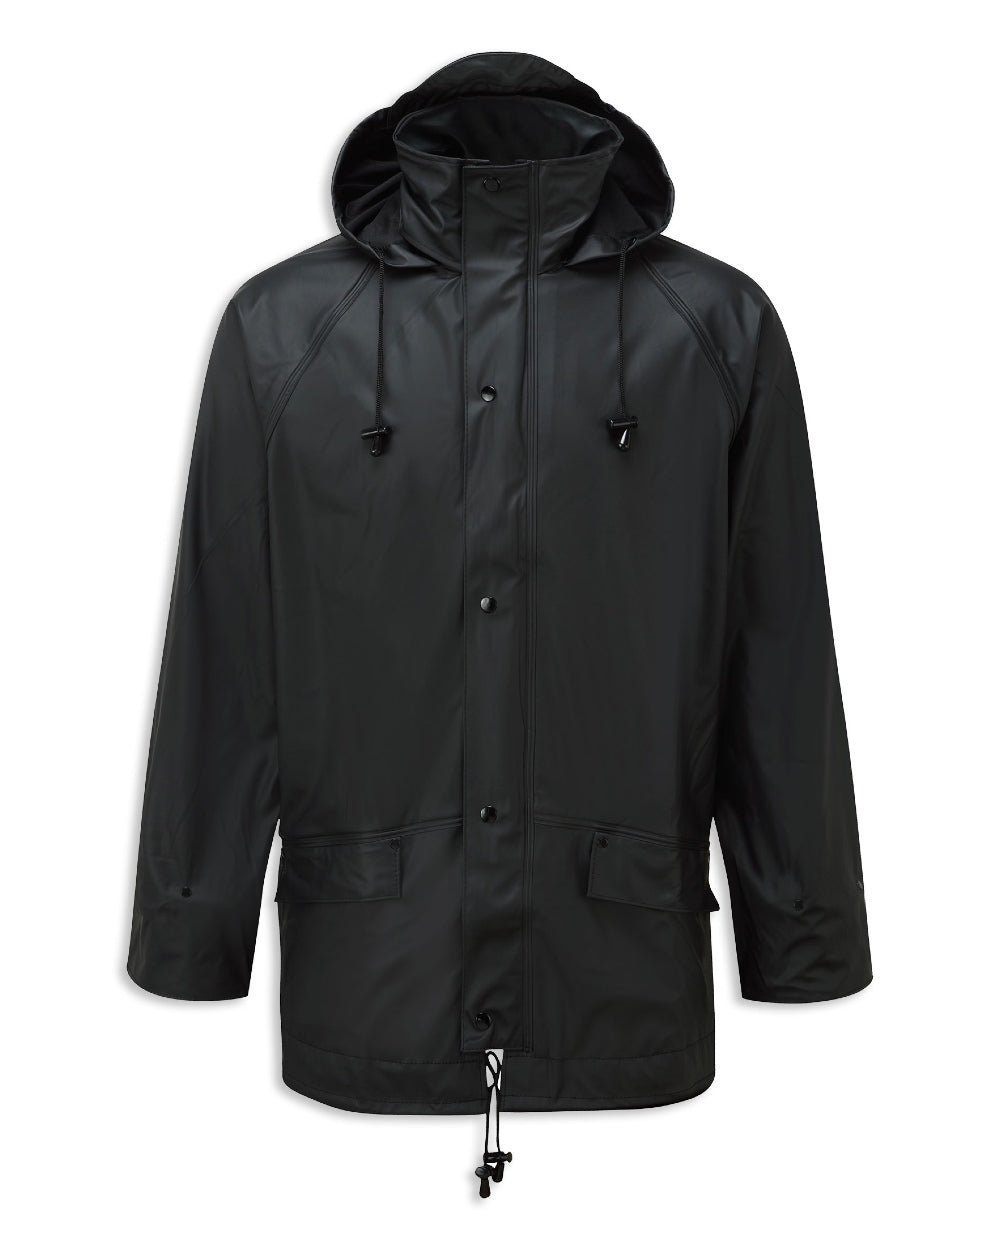 Fort Airflex Fortex Breathable Waterproof Jacket in Black 